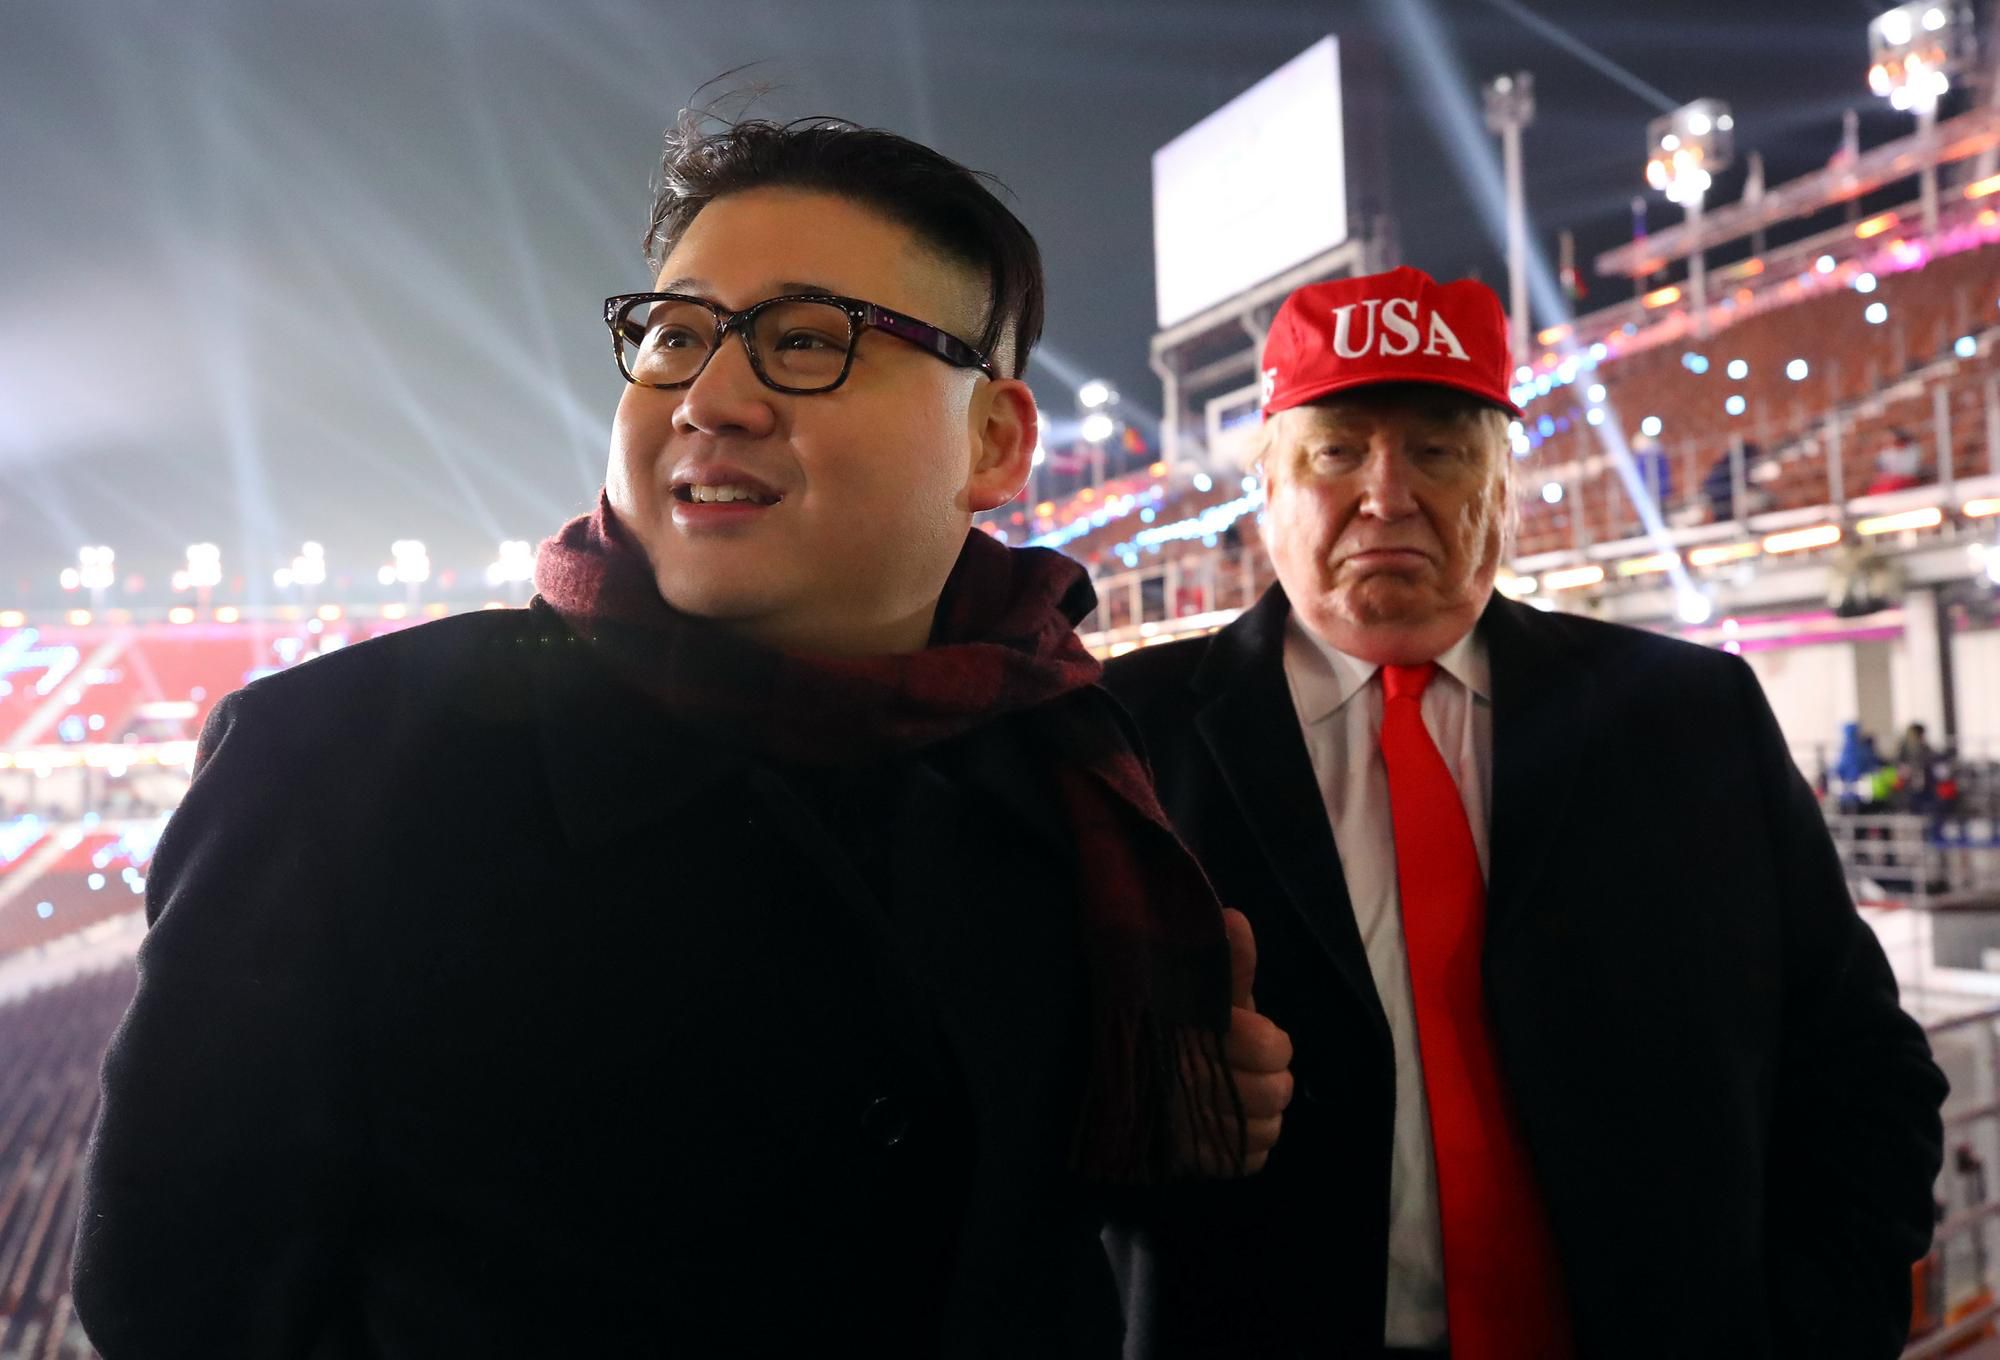 O rozruch na otváracom ceremoniáli OH v Pjongčangu sa postarali  dvojníci amerického prezidenta Donalda Trumpa a severokórejského vodcu Kim Čong-una.